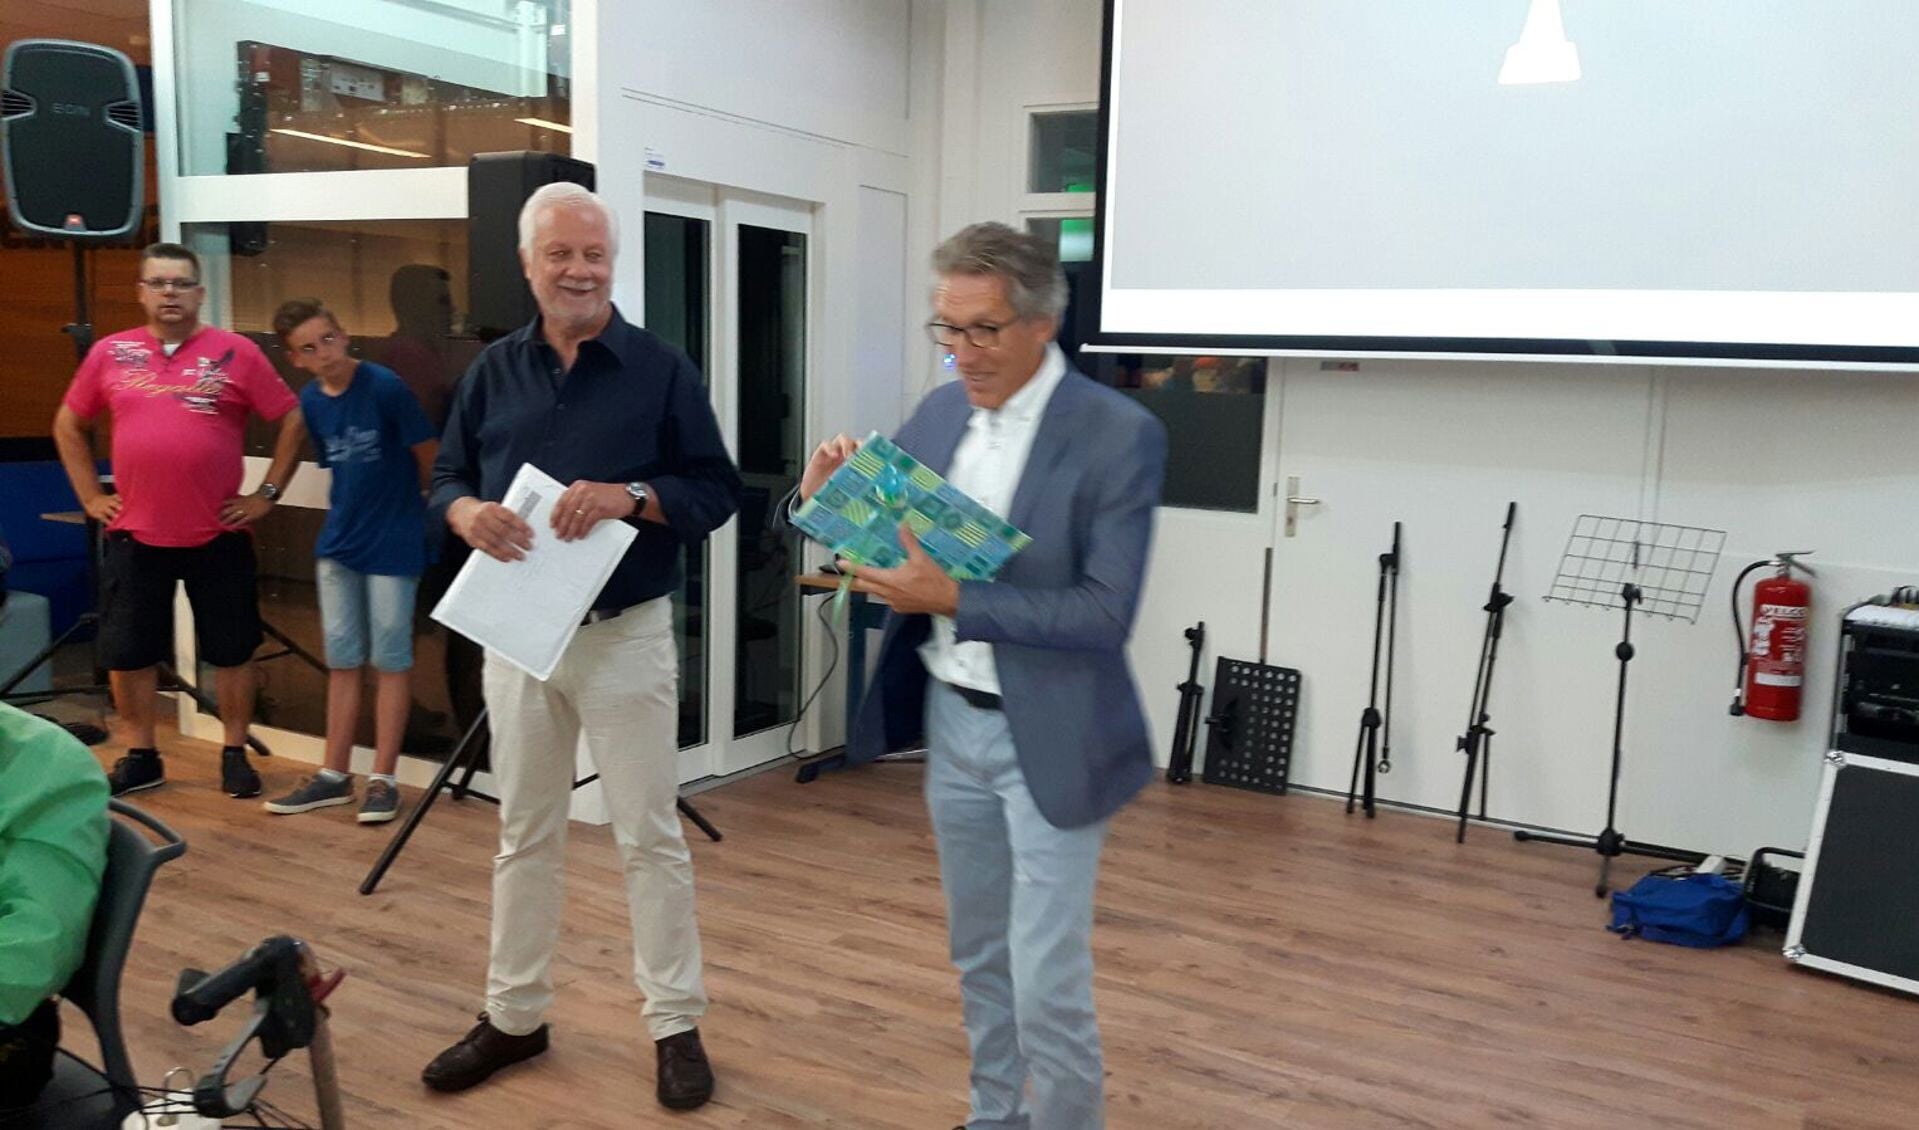 Links Geert Bongers en rechts de huidige directeur Johan van der Weerd die het eerste exemplaar van het boek ontvangt.. Foto: Kyra Broshuis